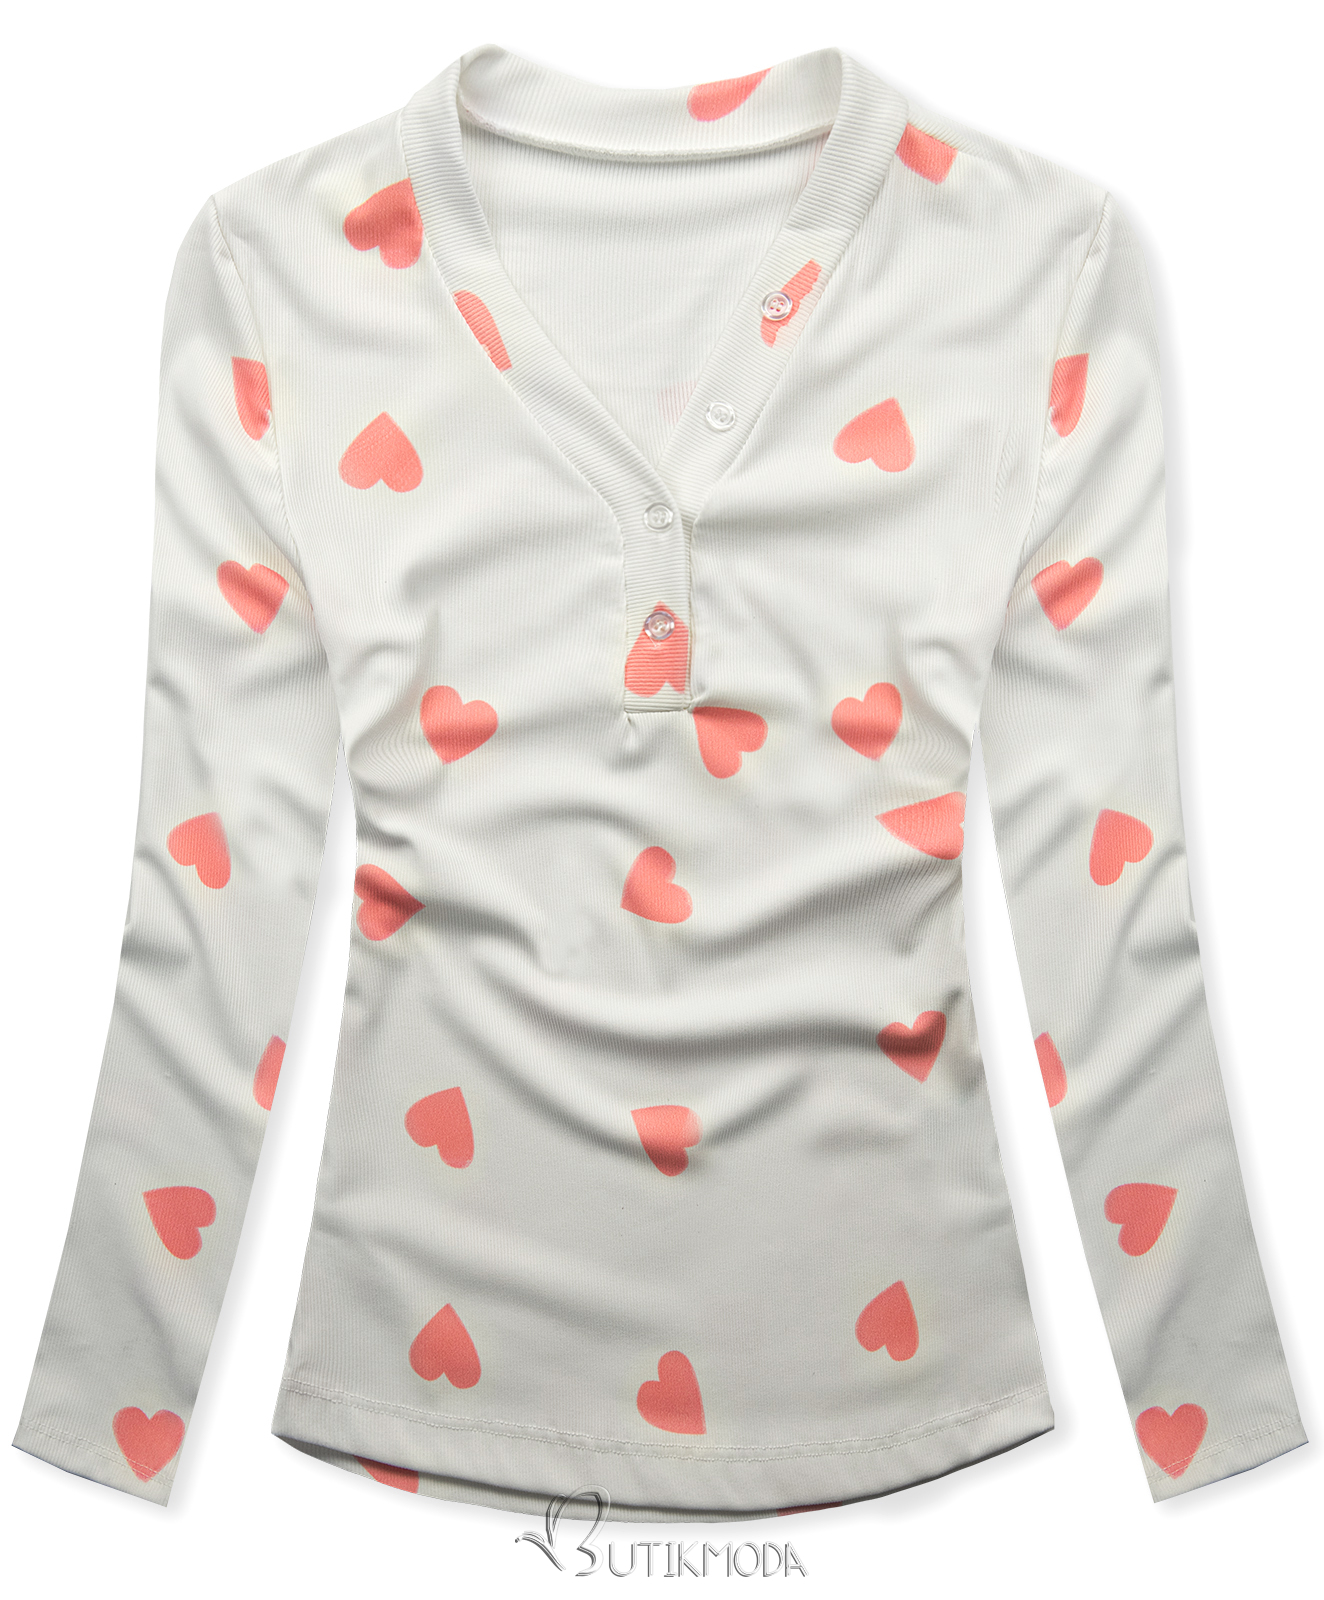 T-Shirt mit Herzdruck Weiß/Apricot HEART4